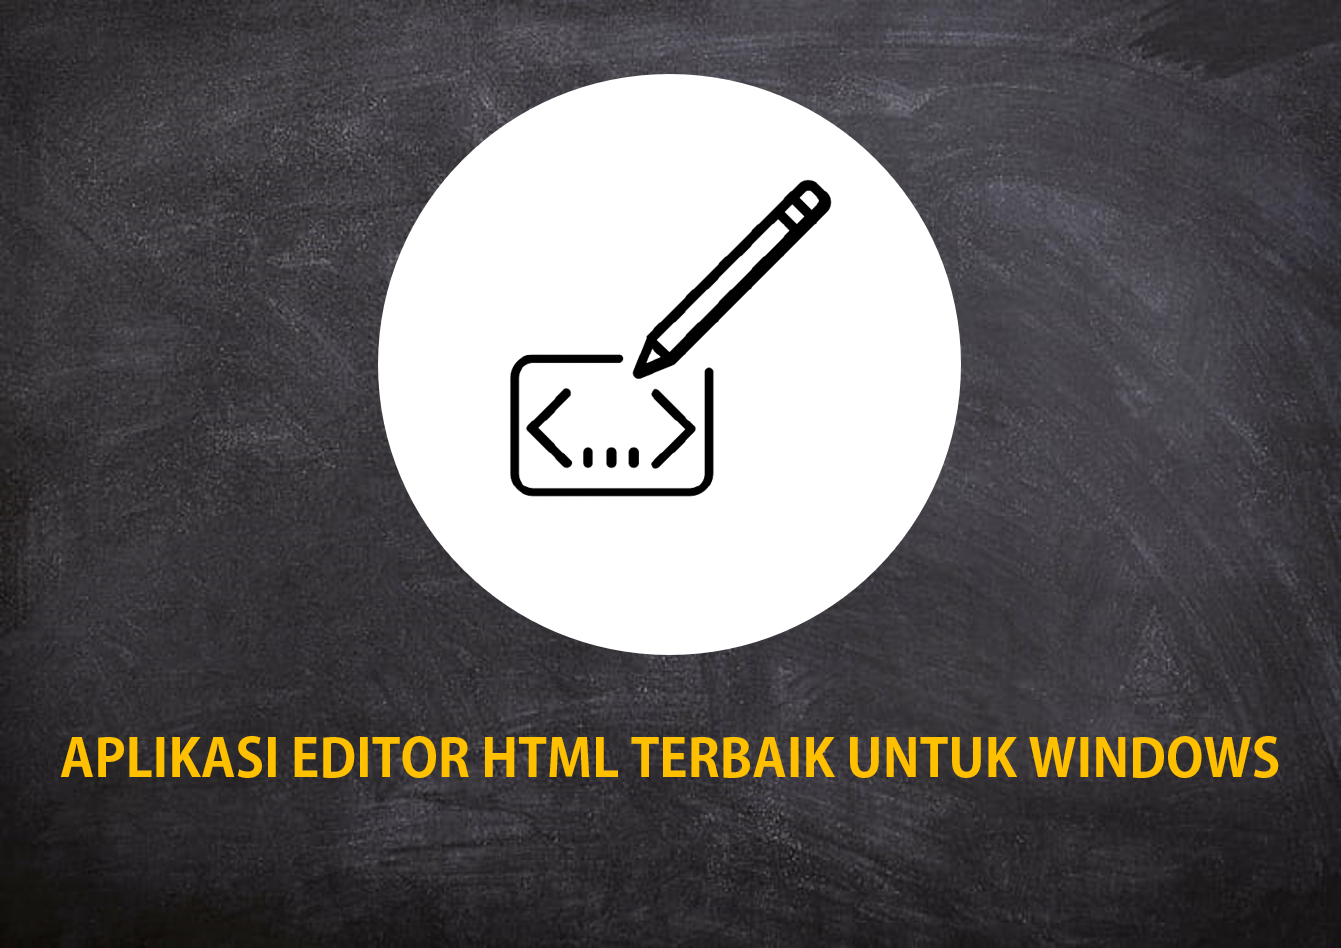 Aplikasi Editor HTML Terbaik Untuk Windows